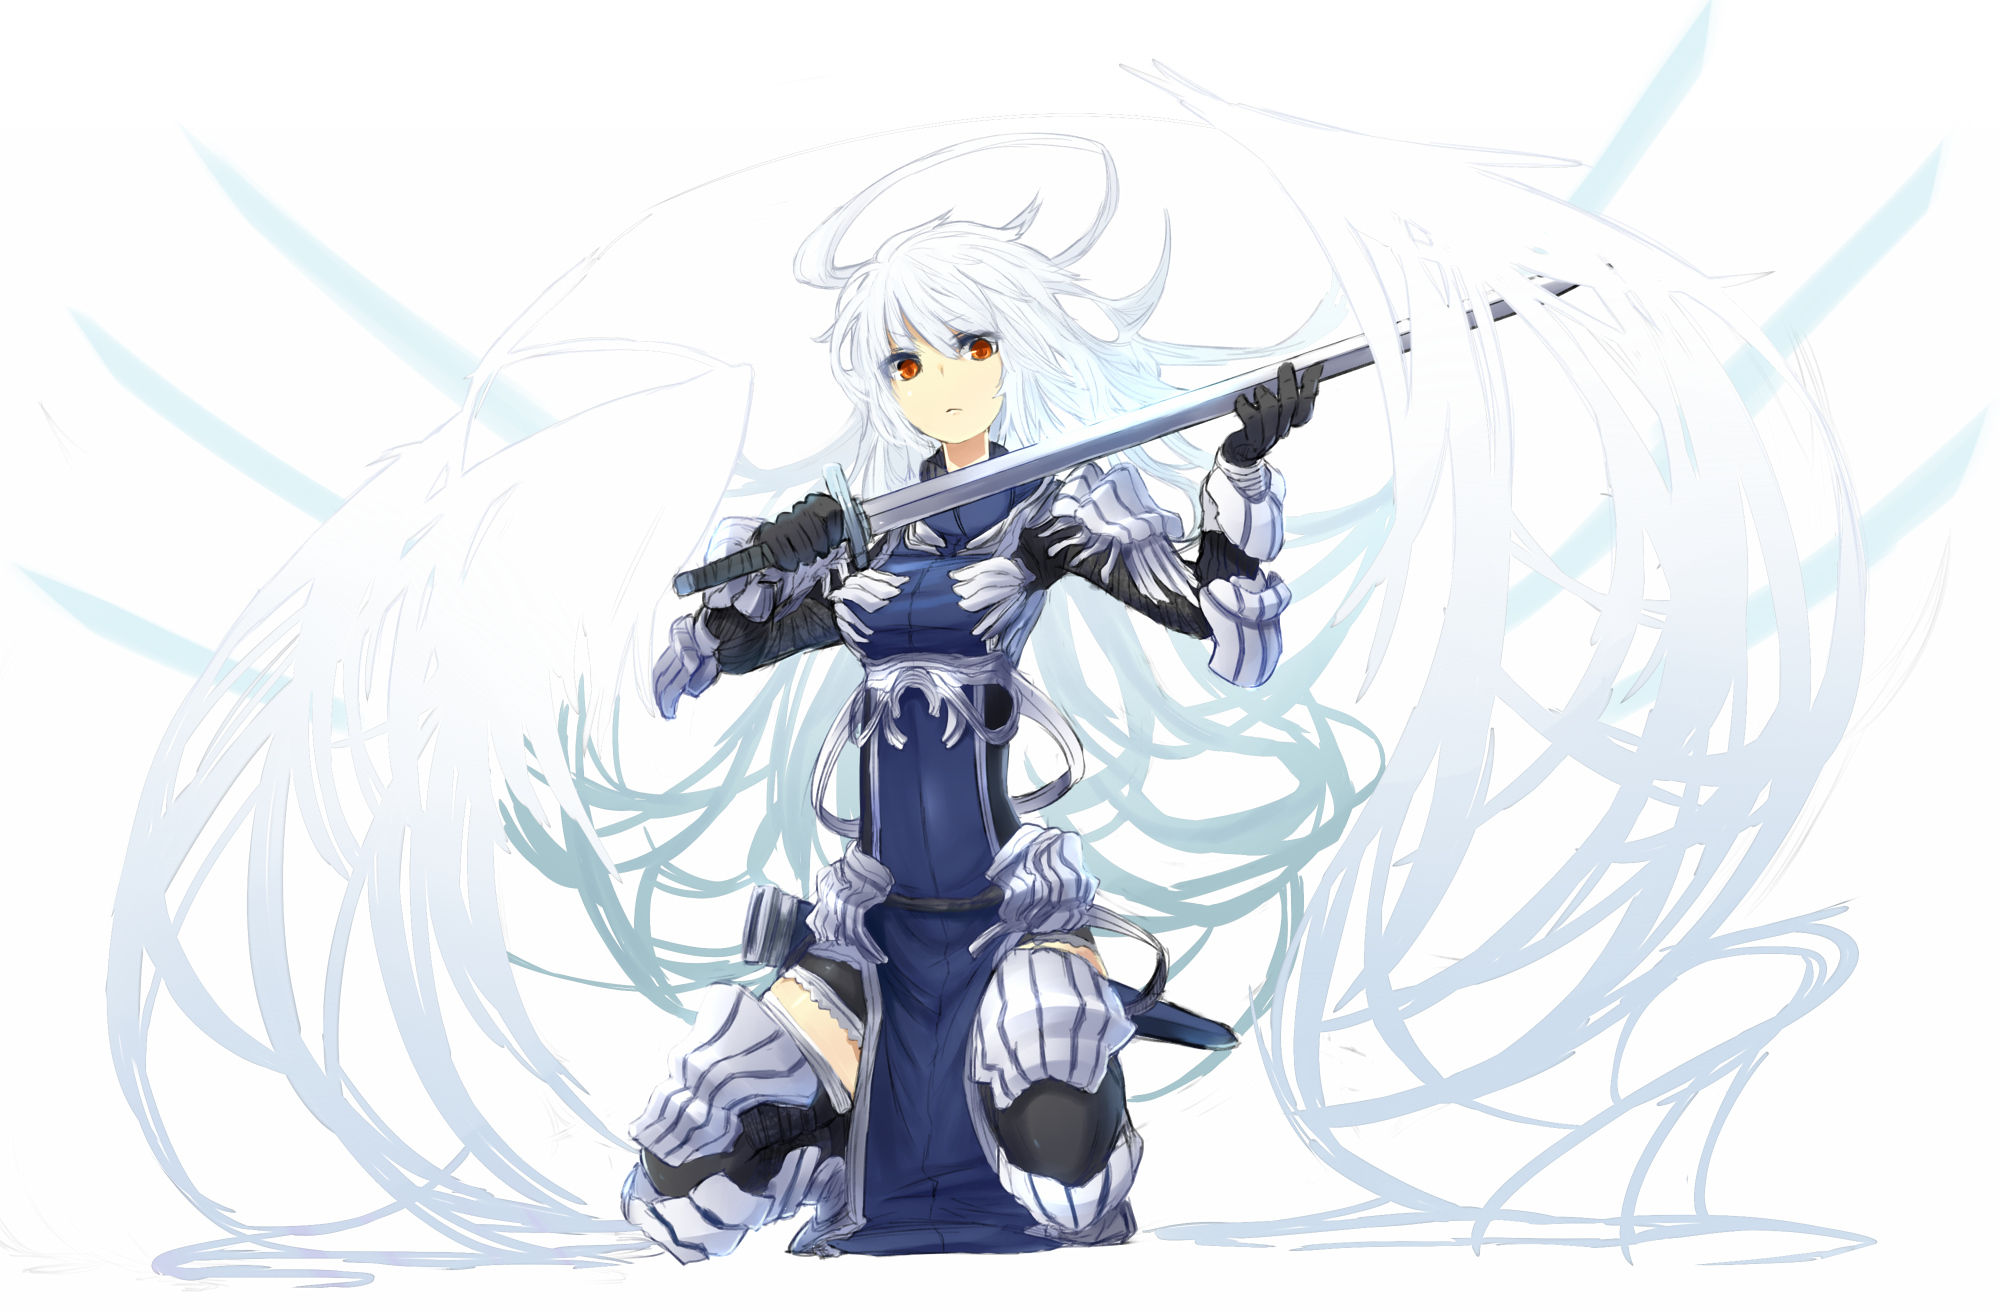 armor, Gloves, Long, Hair, Orange, Eyes, Original, Shiroganeusagi, Sword, Weapon, White, Hair, Wings Wallpaper